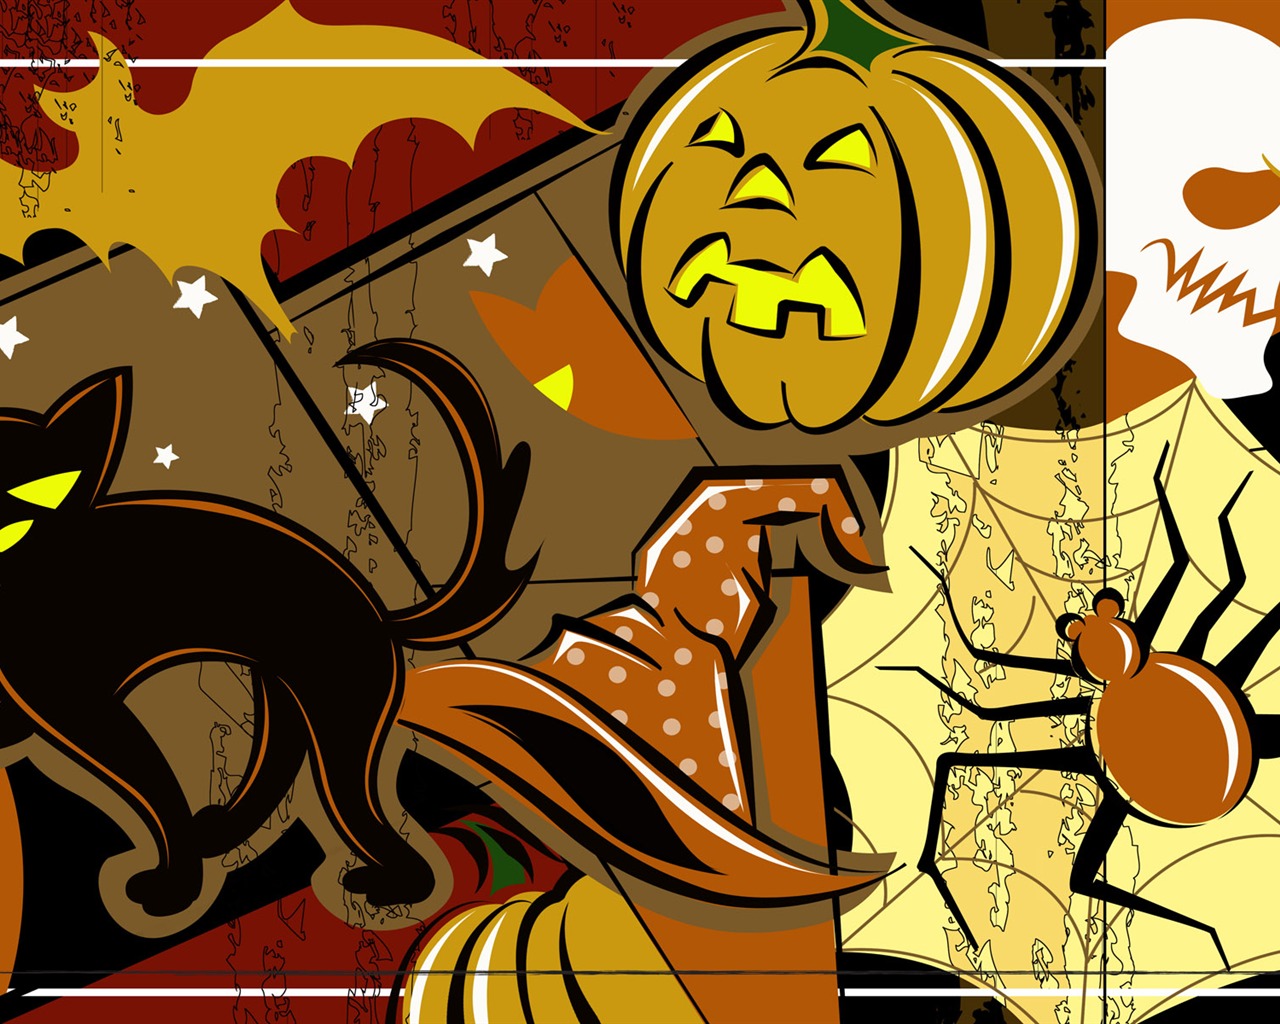 Fondos de Halloween temáticos (4) #13 - 1280x1024